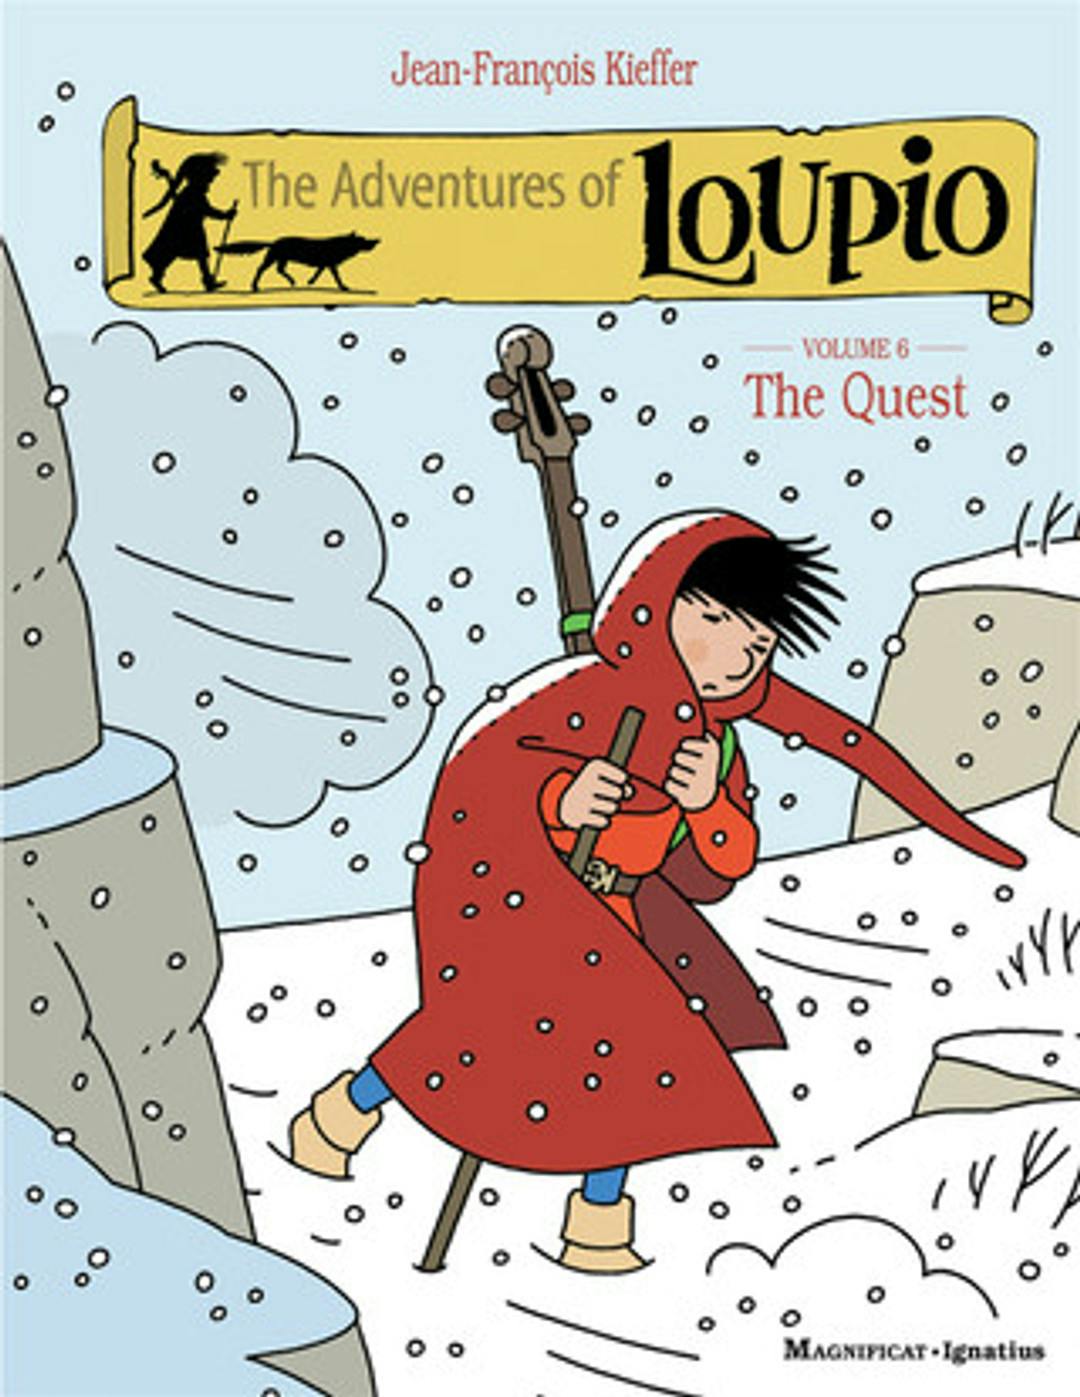 The Adventures of Loupio Volume 6